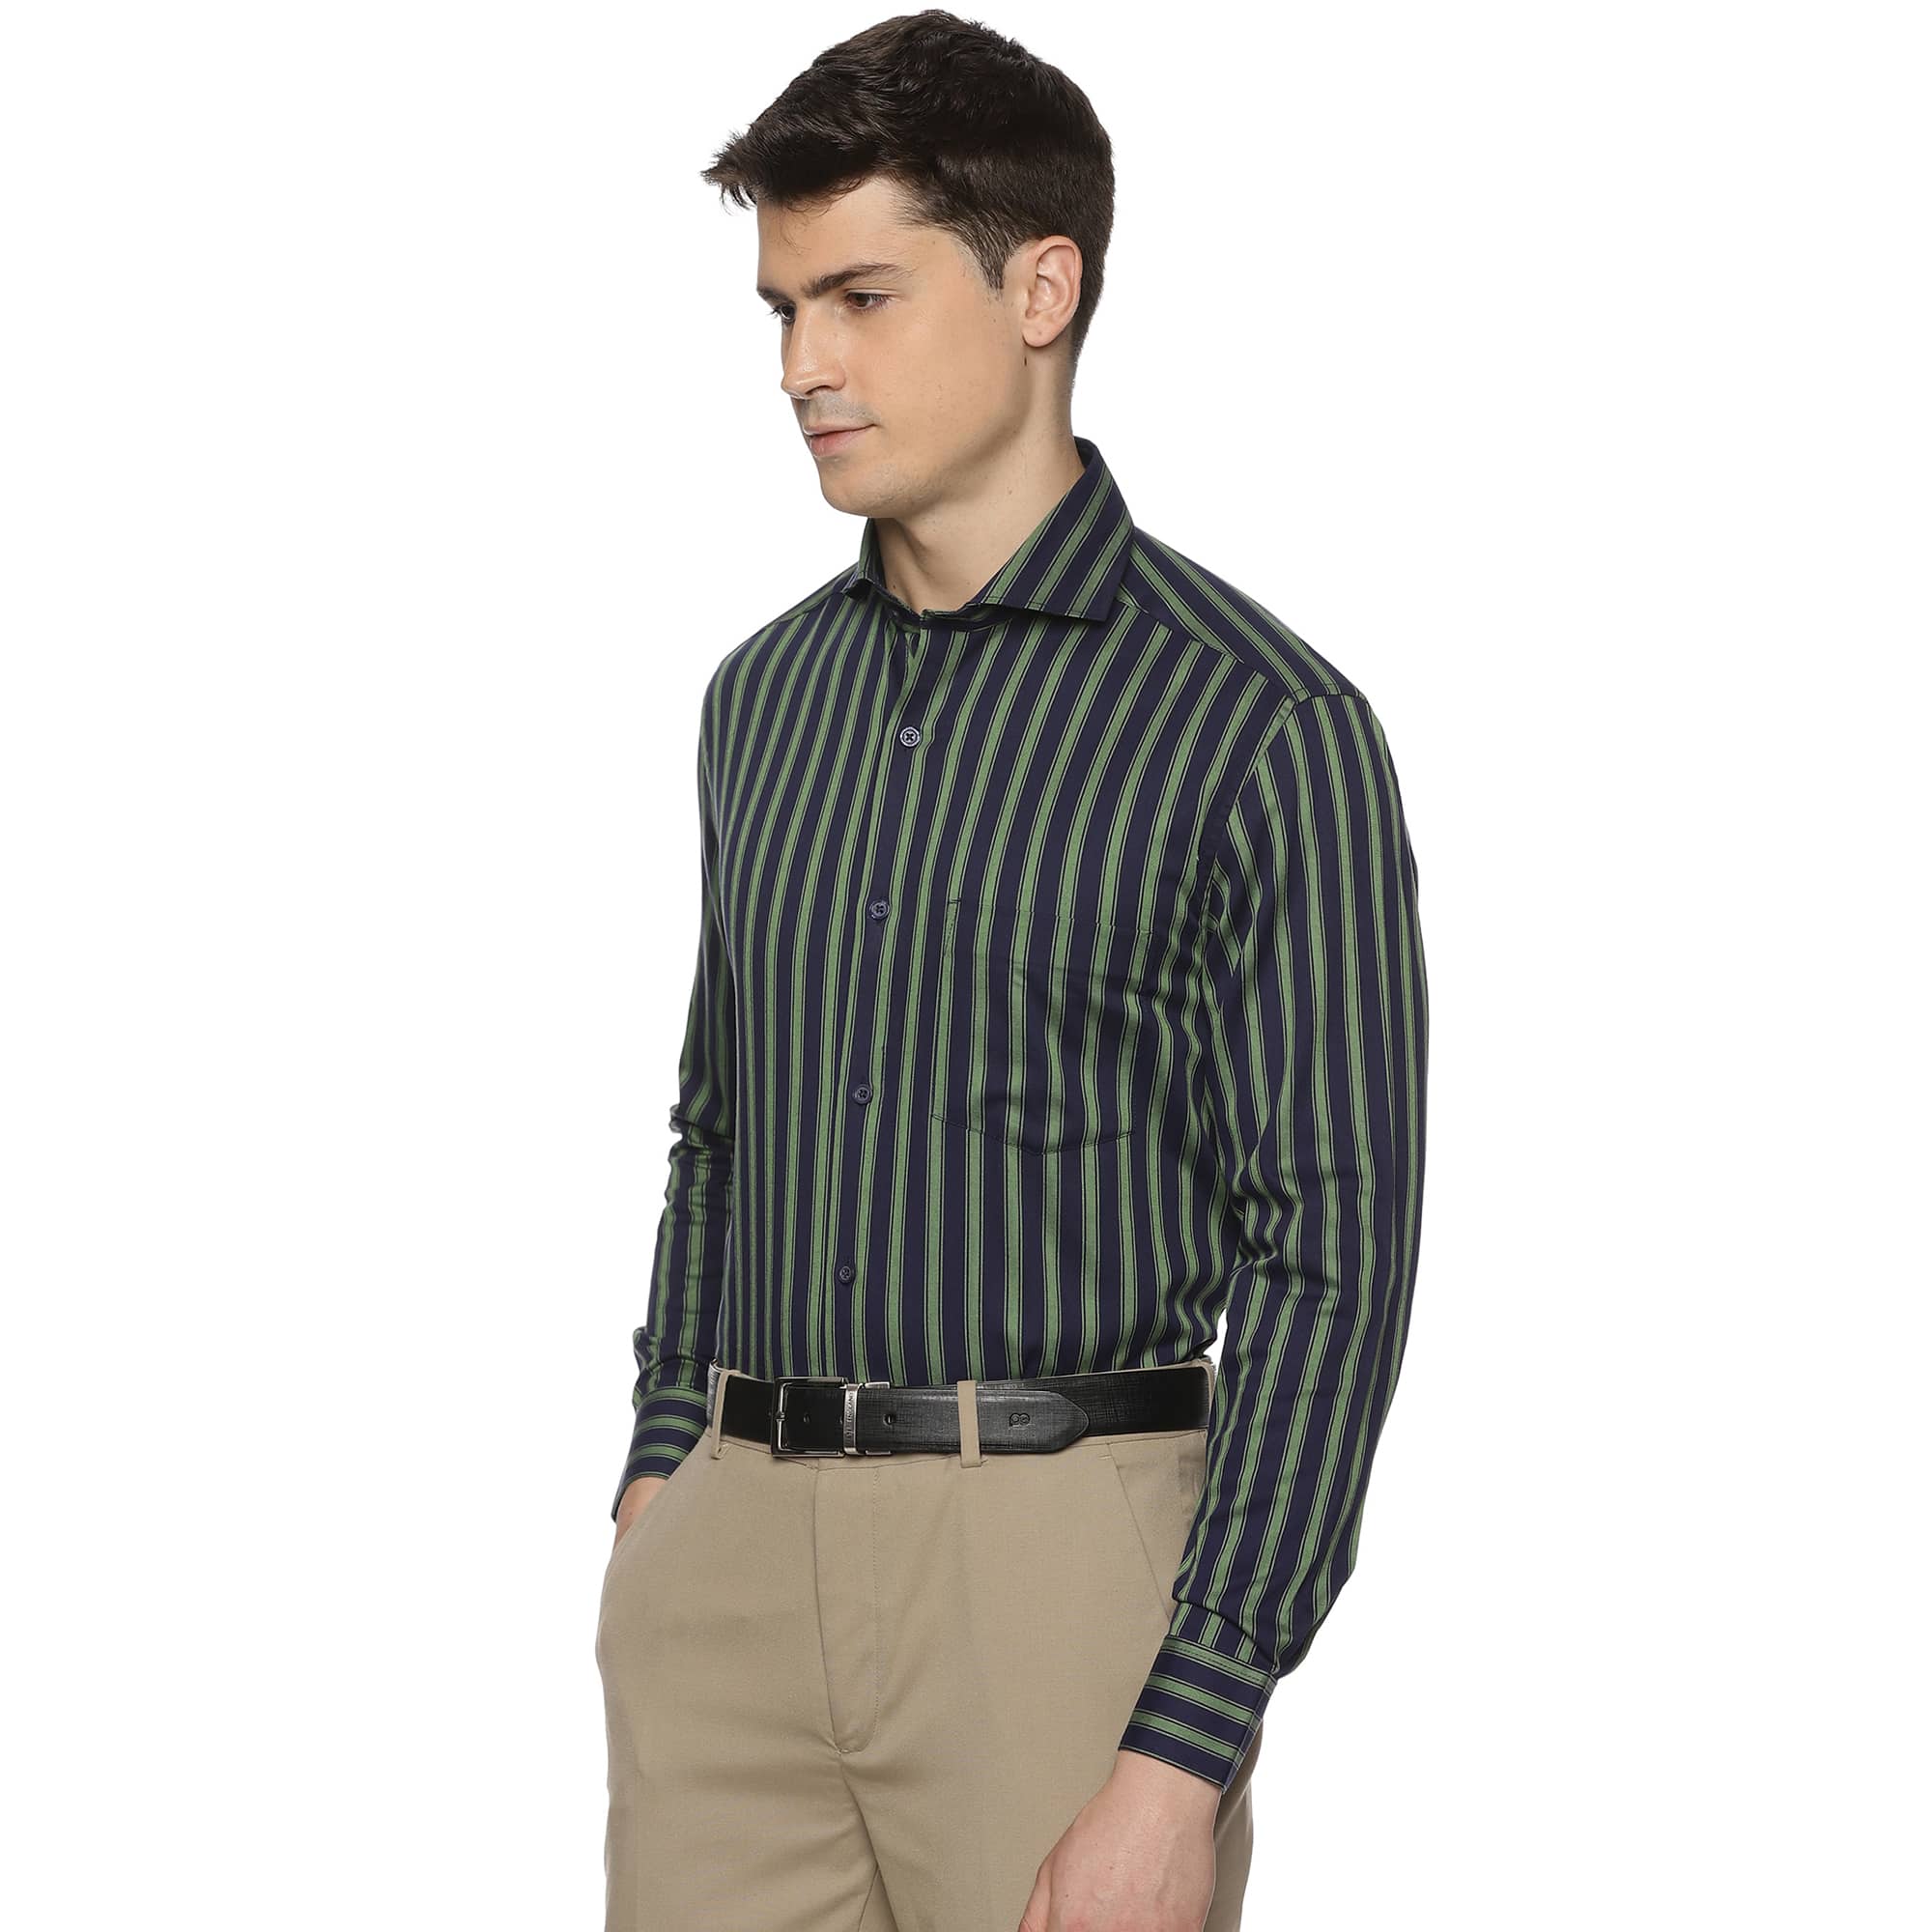 Rhythm Green Stripe Shirt In Navy Blue - The Formal Club